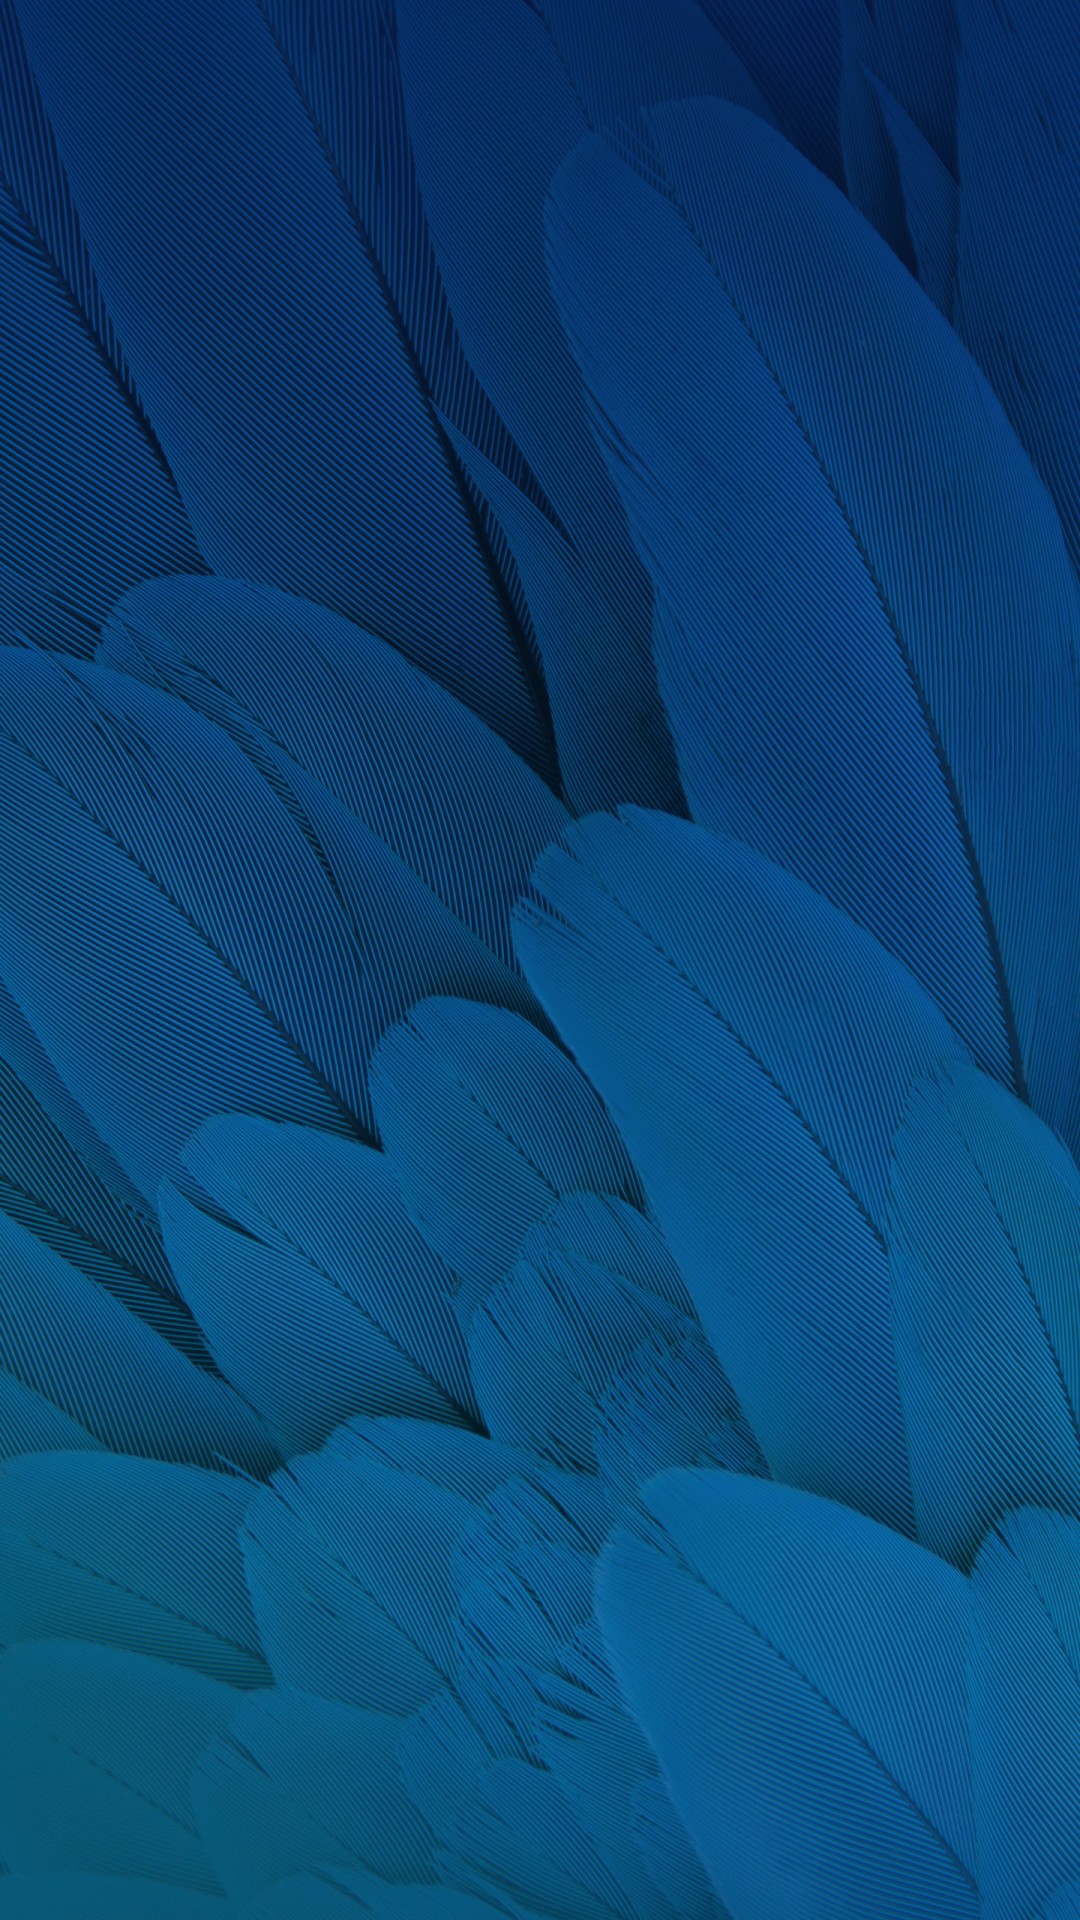 moto x play fondos de pantalla hd,azul,agua,turquesa,verde azulado,pluma